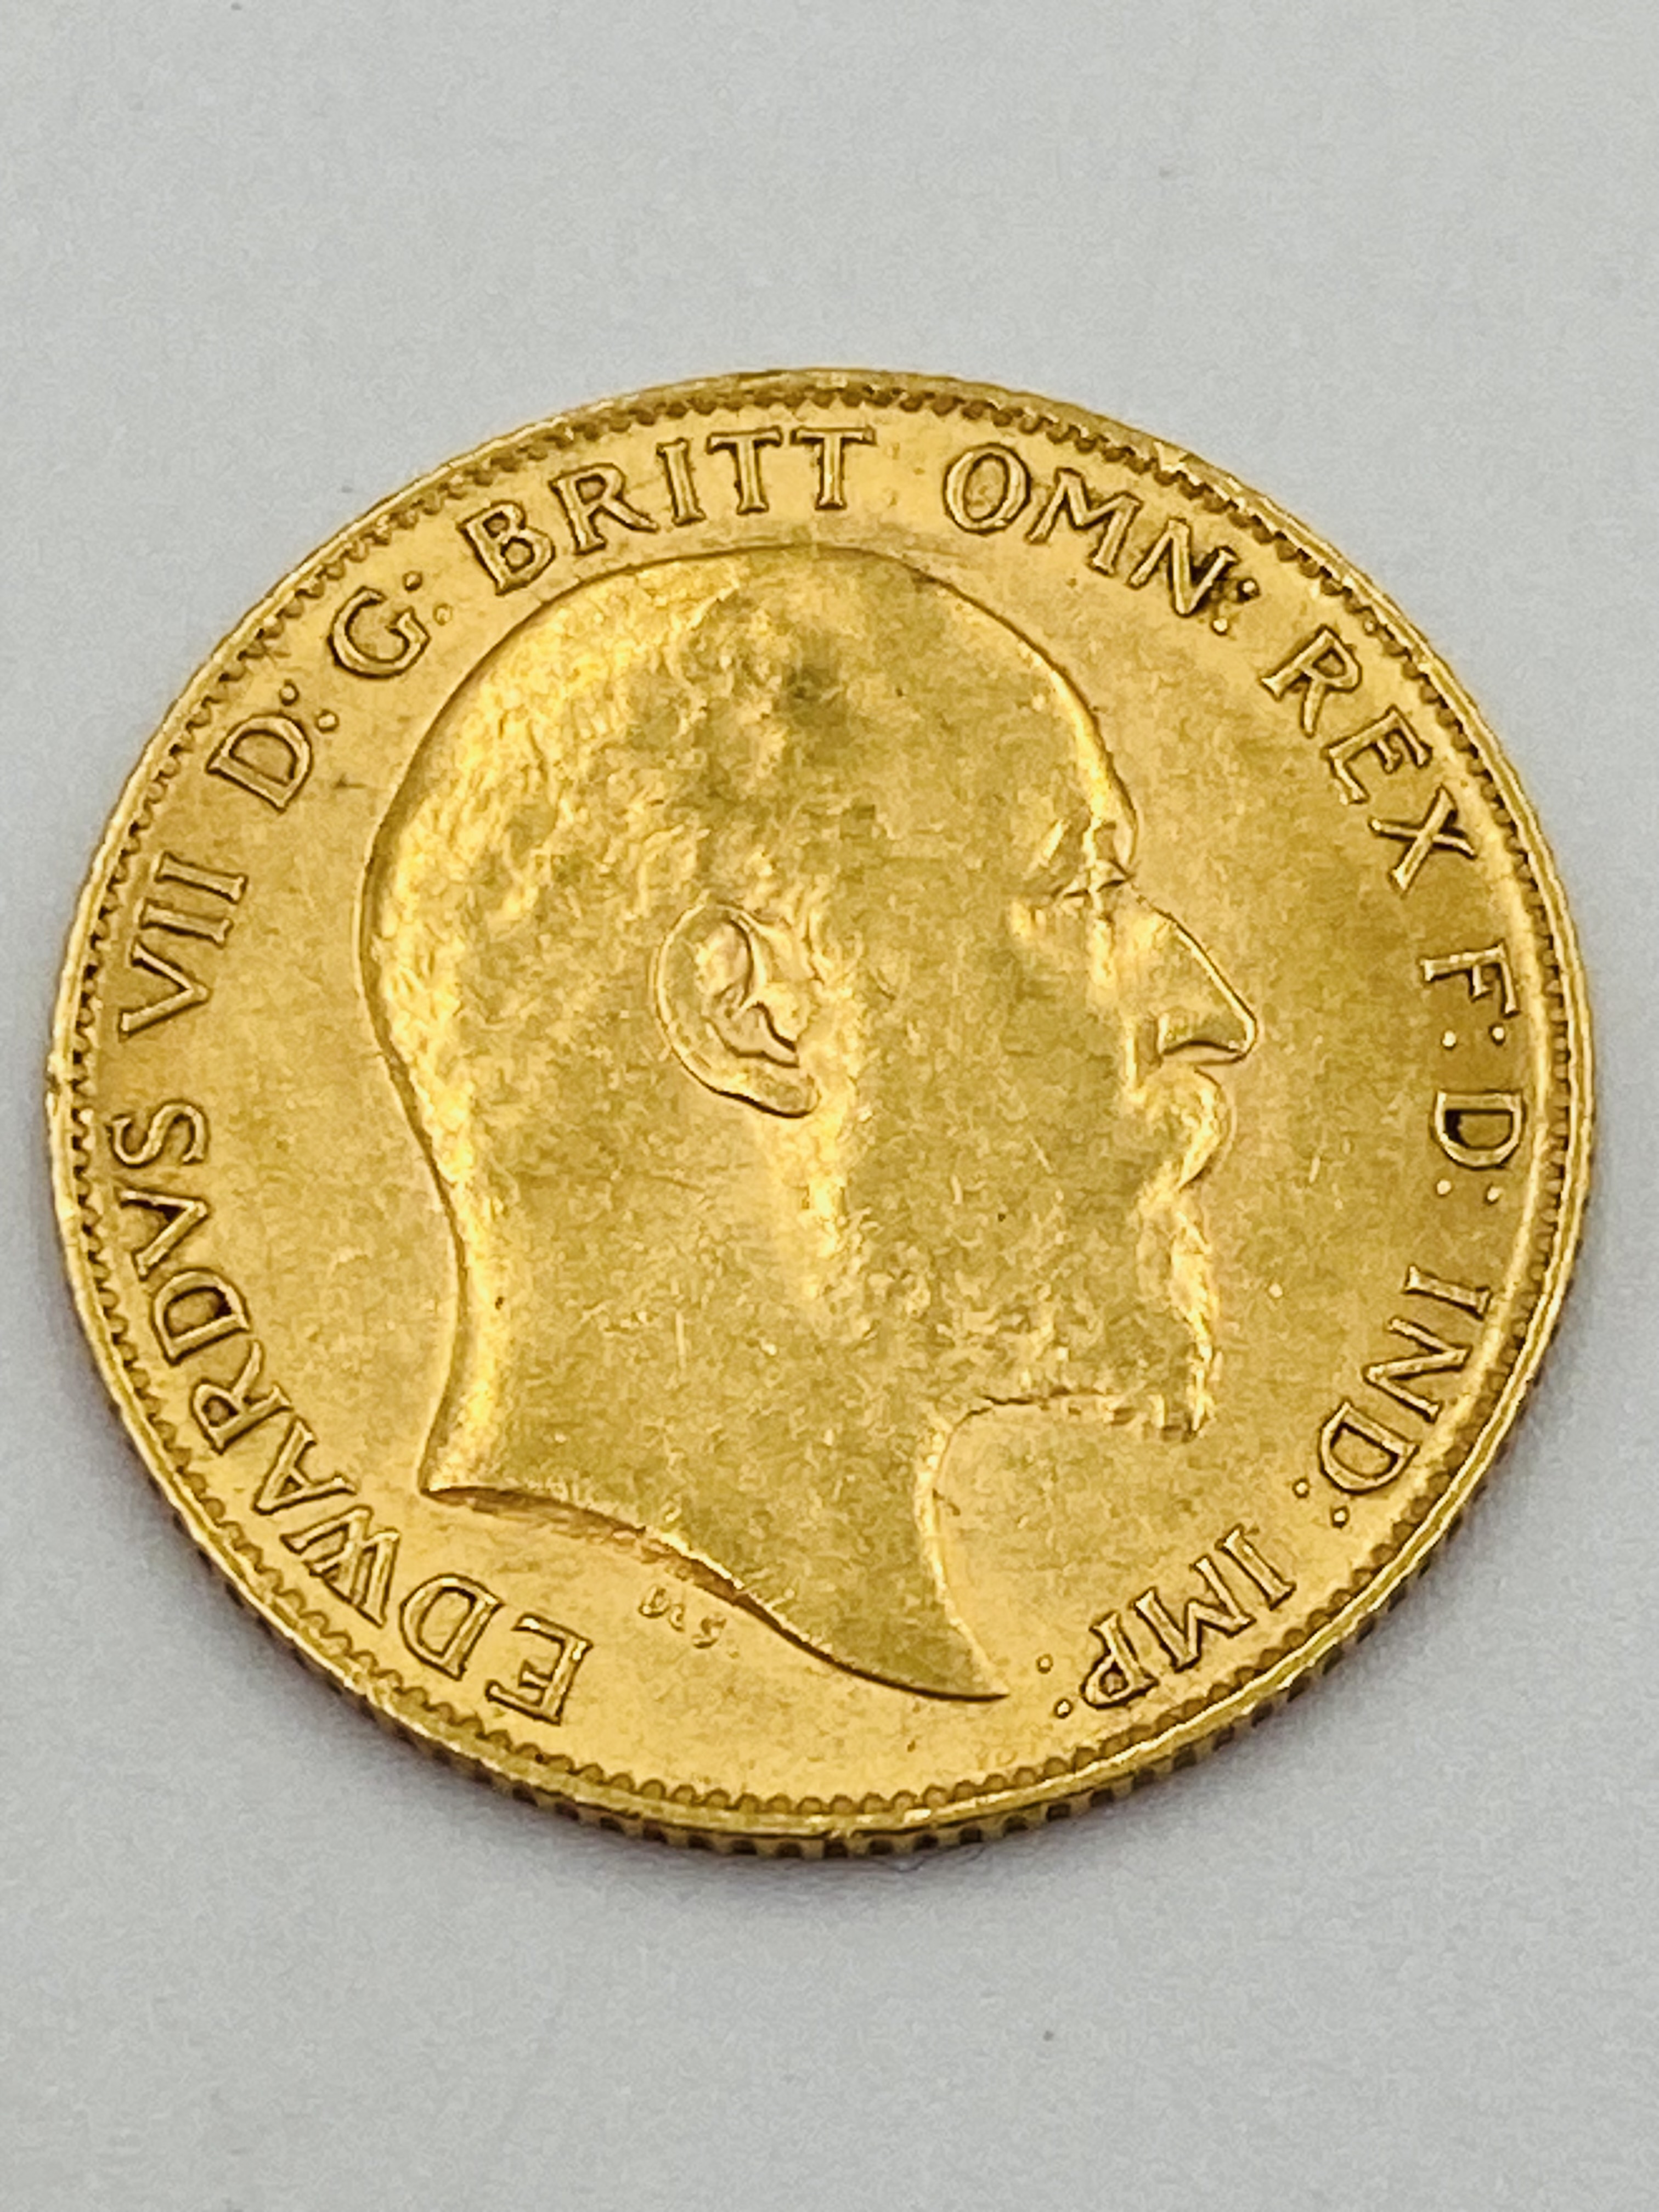 Edward VII gold half sovereign - Image 2 of 2